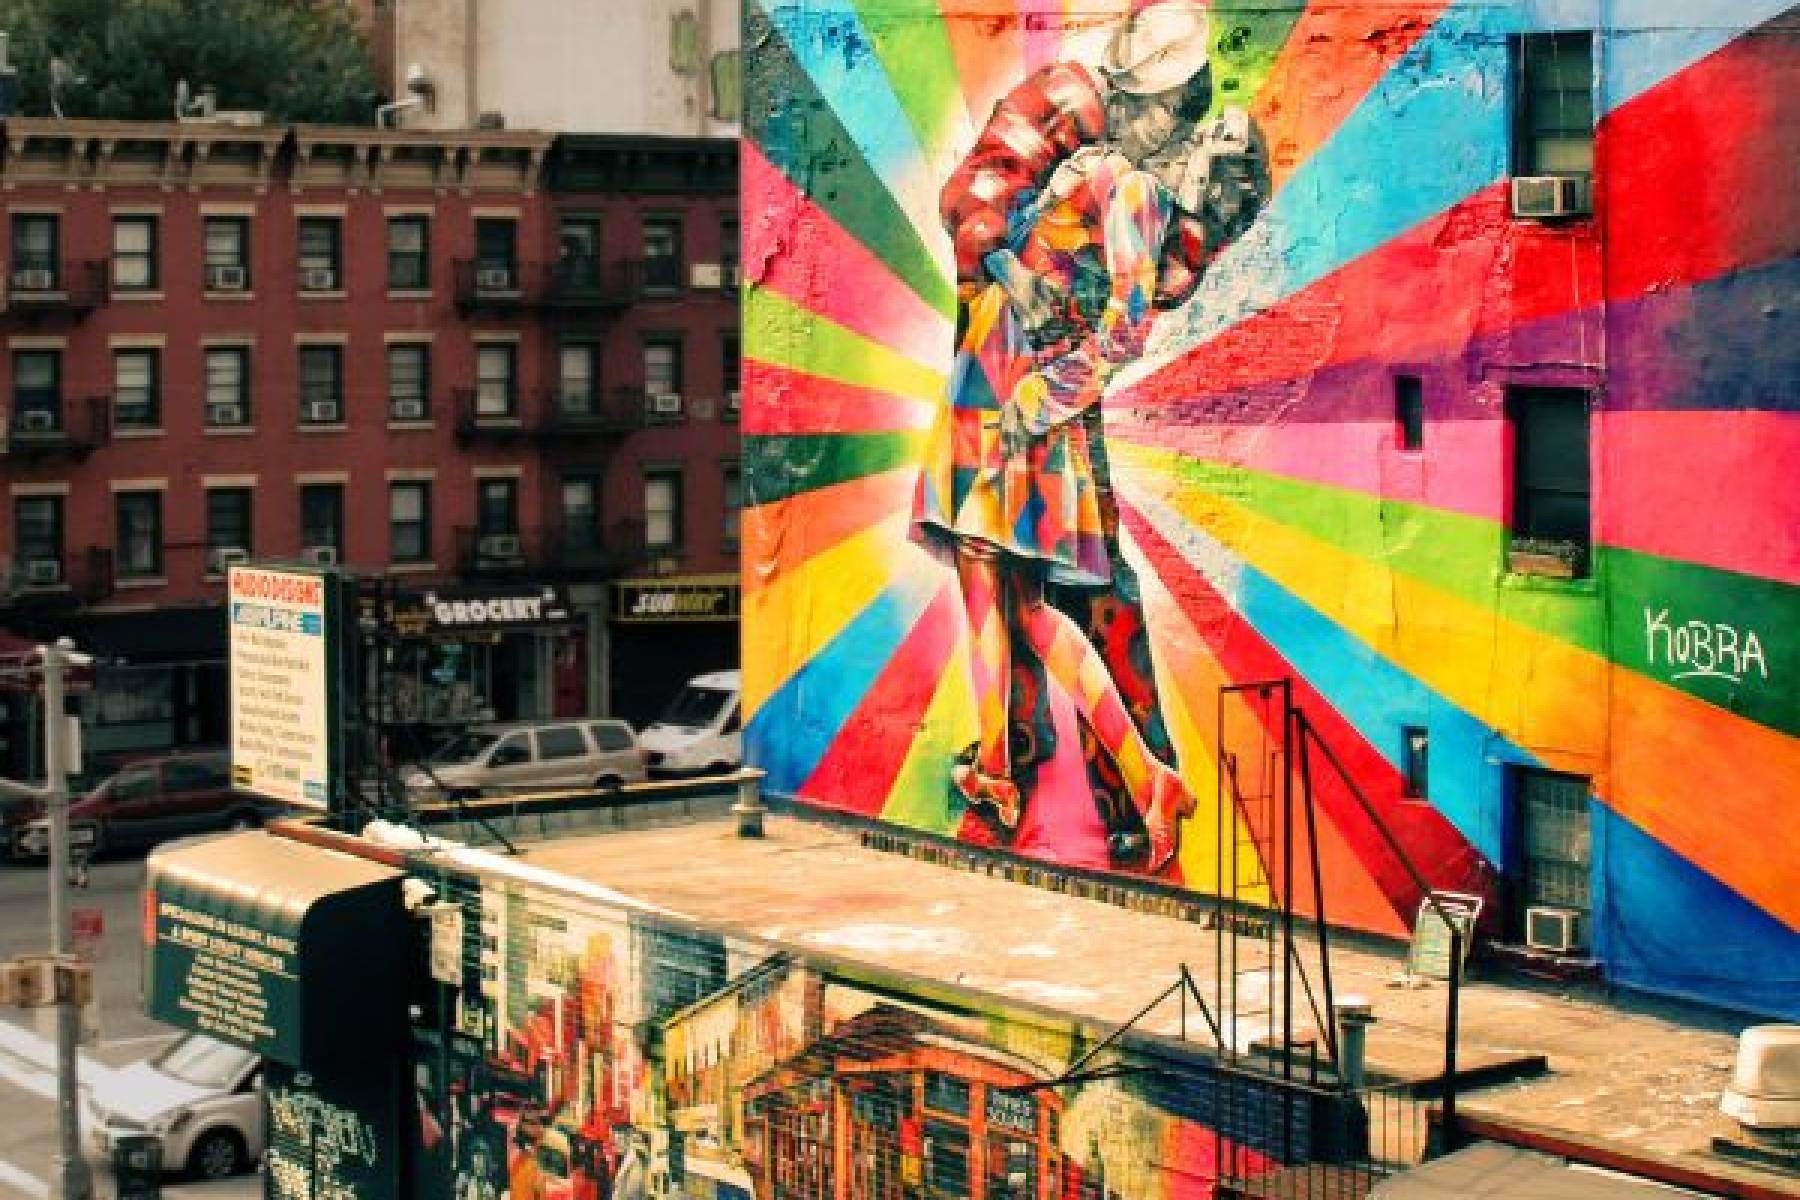 Sztuka uliczna: Ekscytujący świat artystycznej ekspresji na ulicach miast